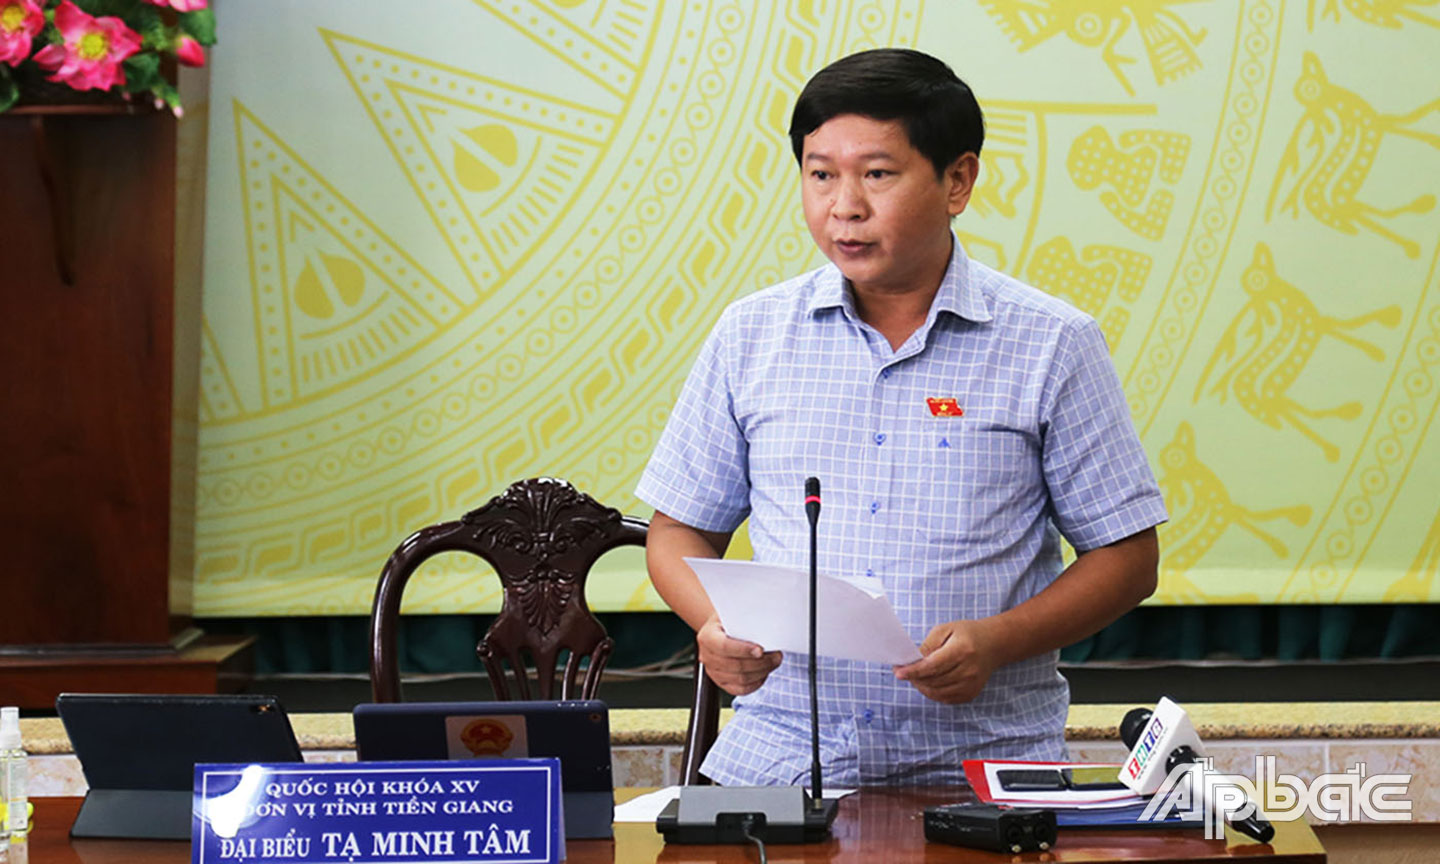 Đại biểu Tạ Minh Tâm phát biểu tại phiên  thảo luận tổ của Kỳ họp thứ 2 - Quốc hội khóa XV.